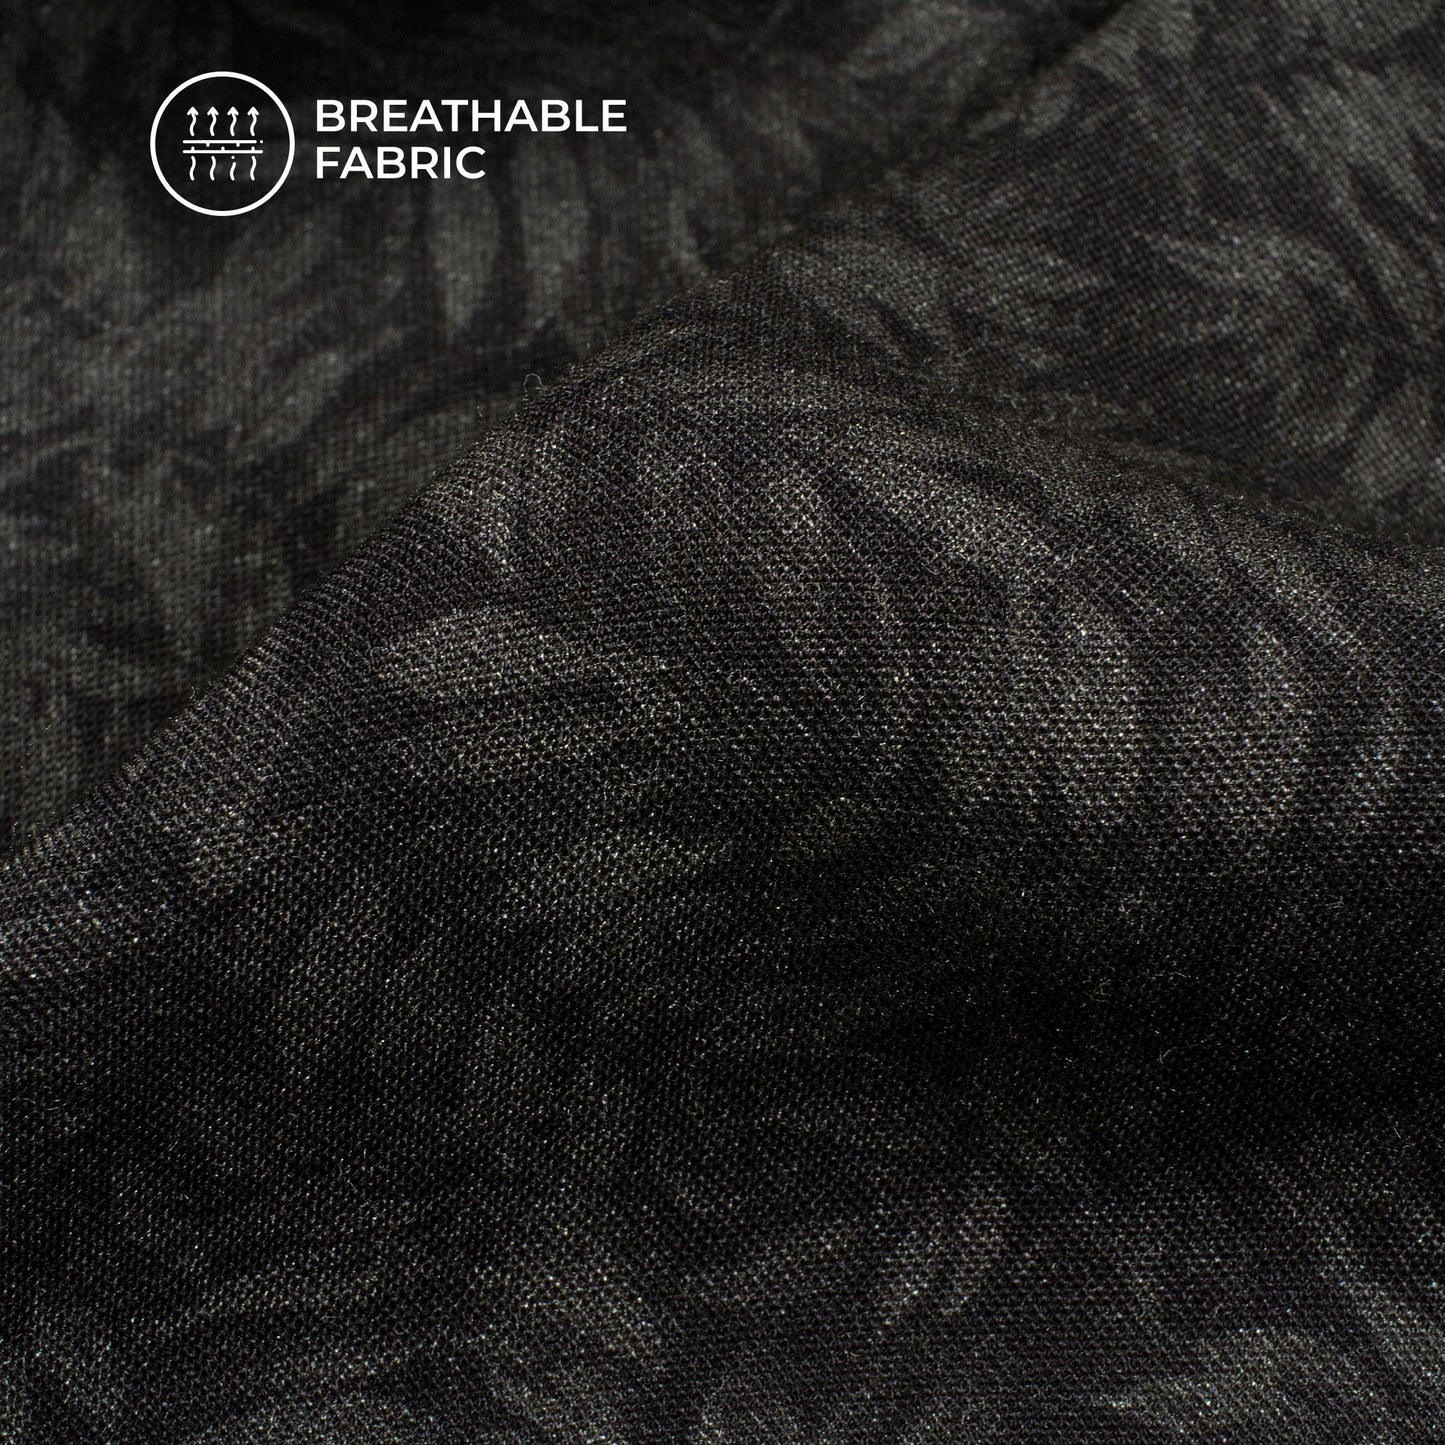 Black Leaf Digital Print Viscose Rayon Fabric (Width 58 Inches)